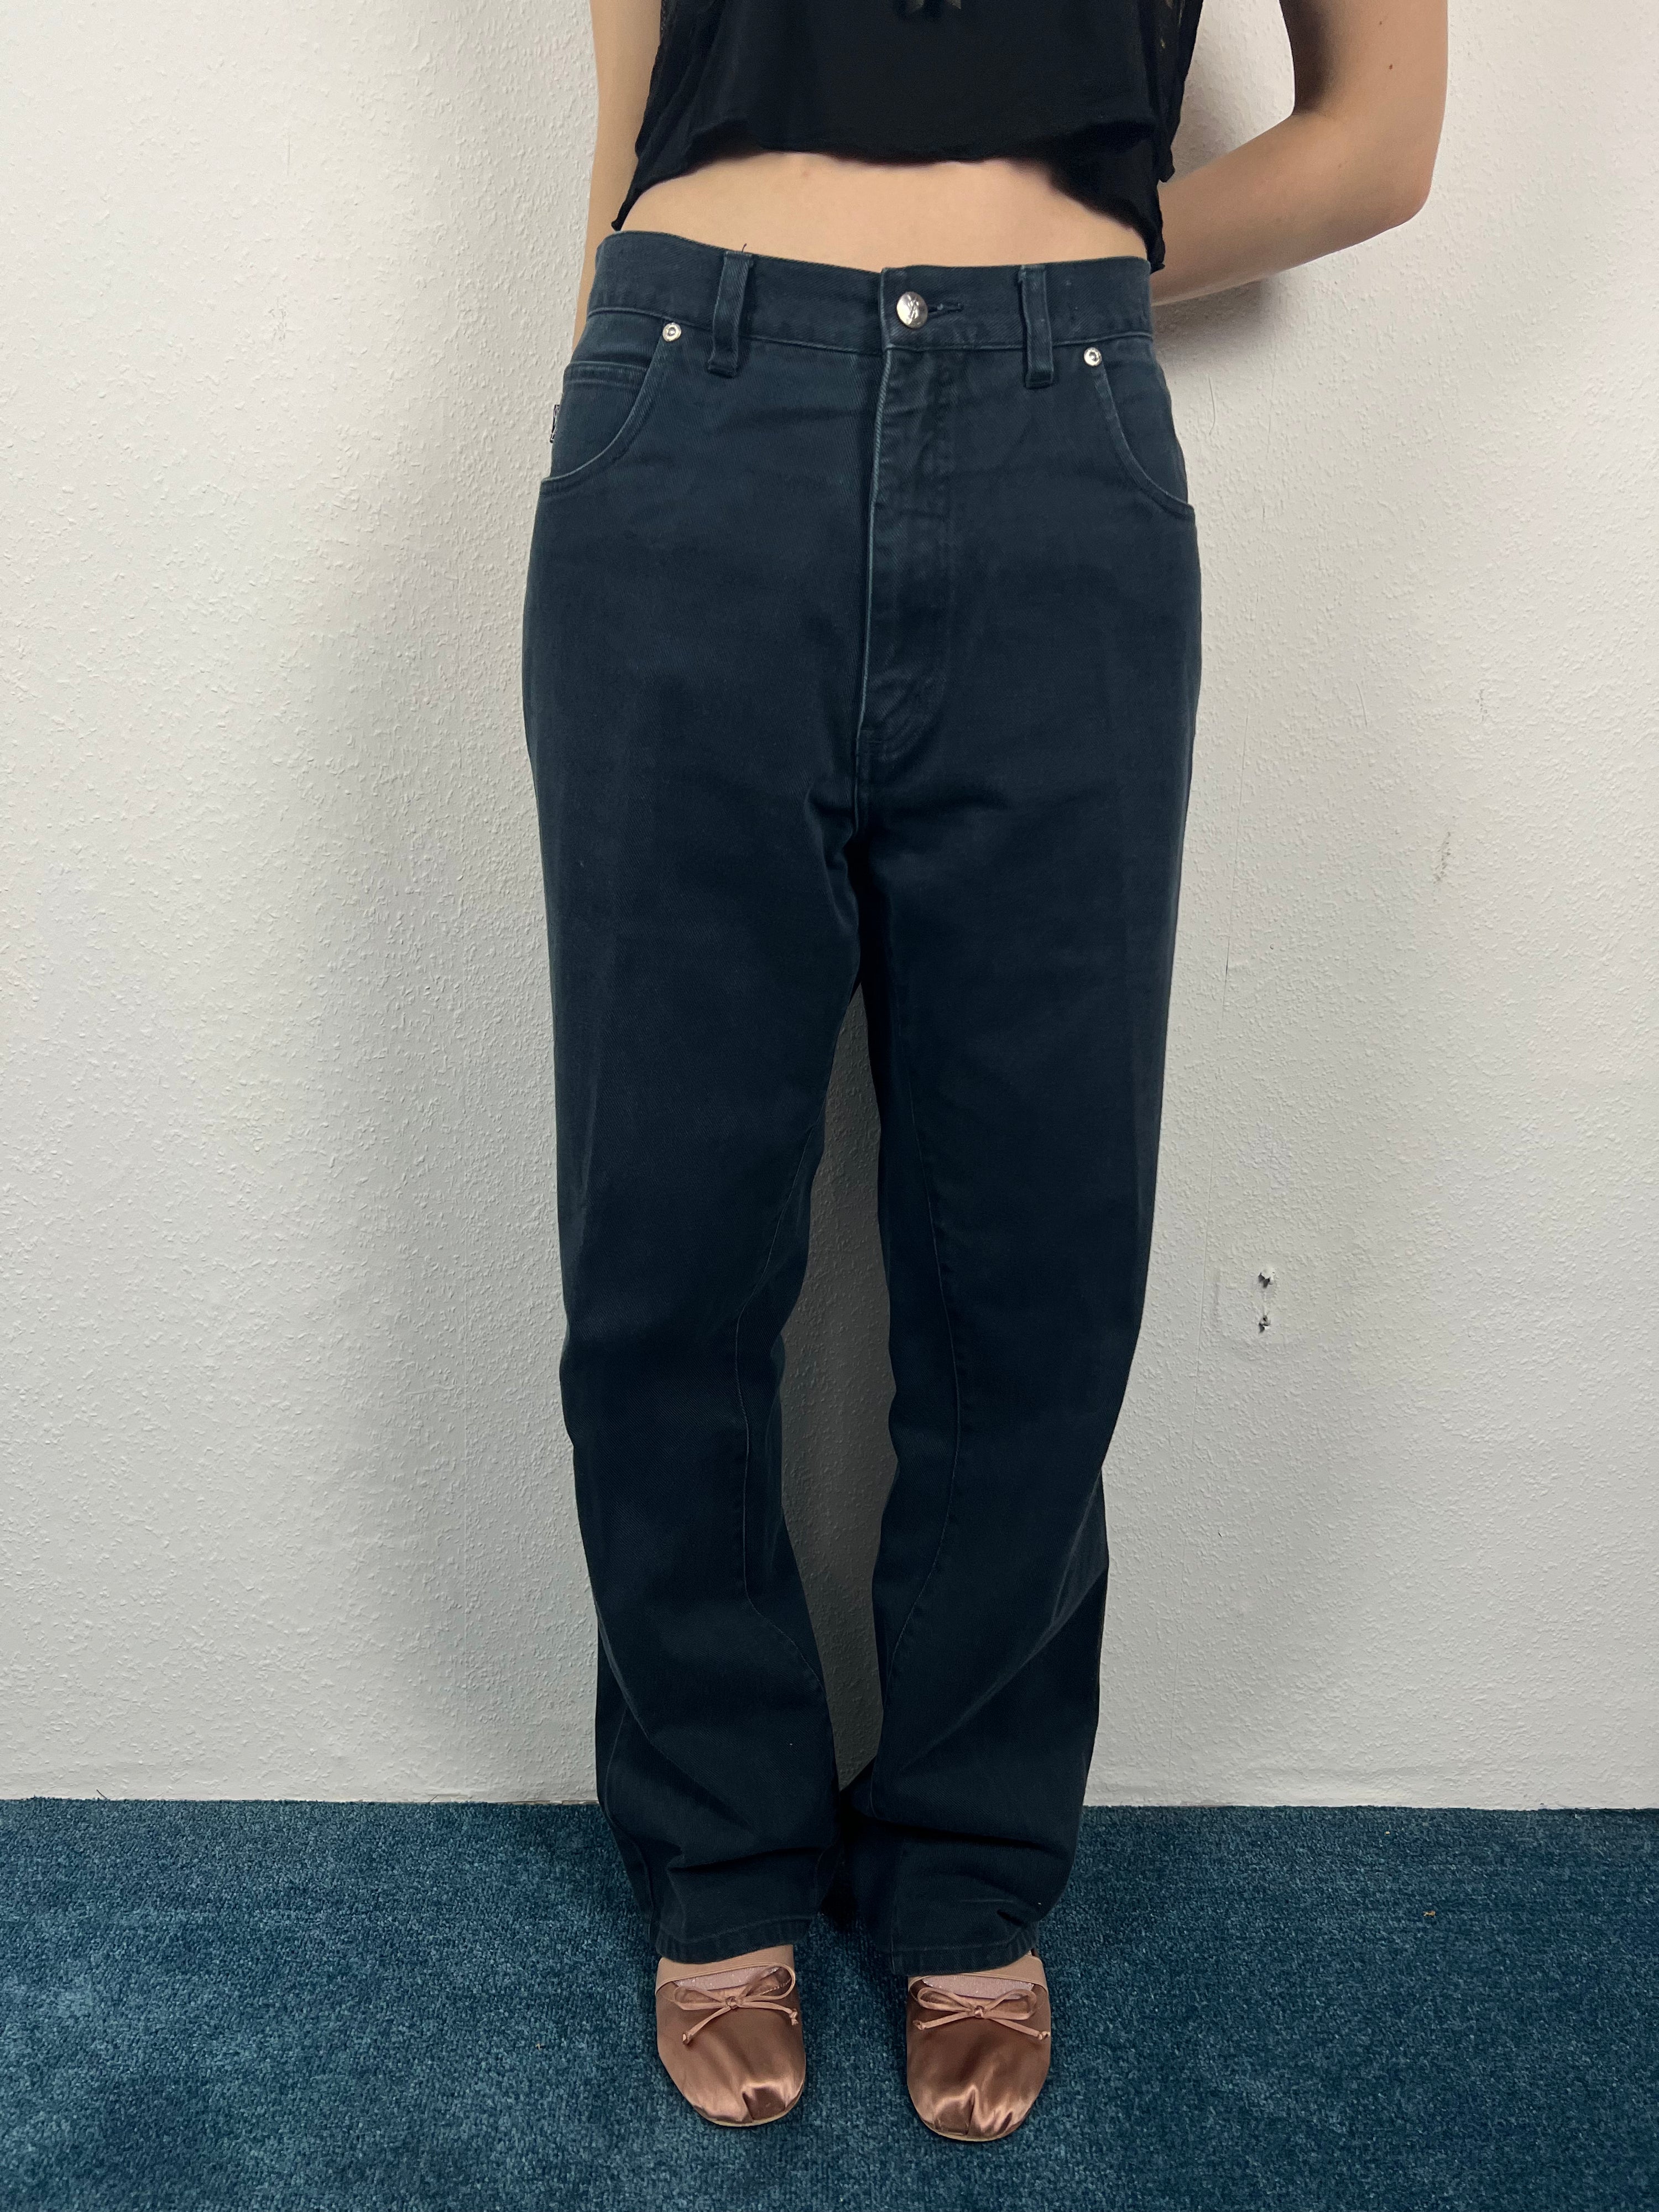 Vintage Yves Saint Laurent Loose Fit Jeans (36/32 ; L/XL)